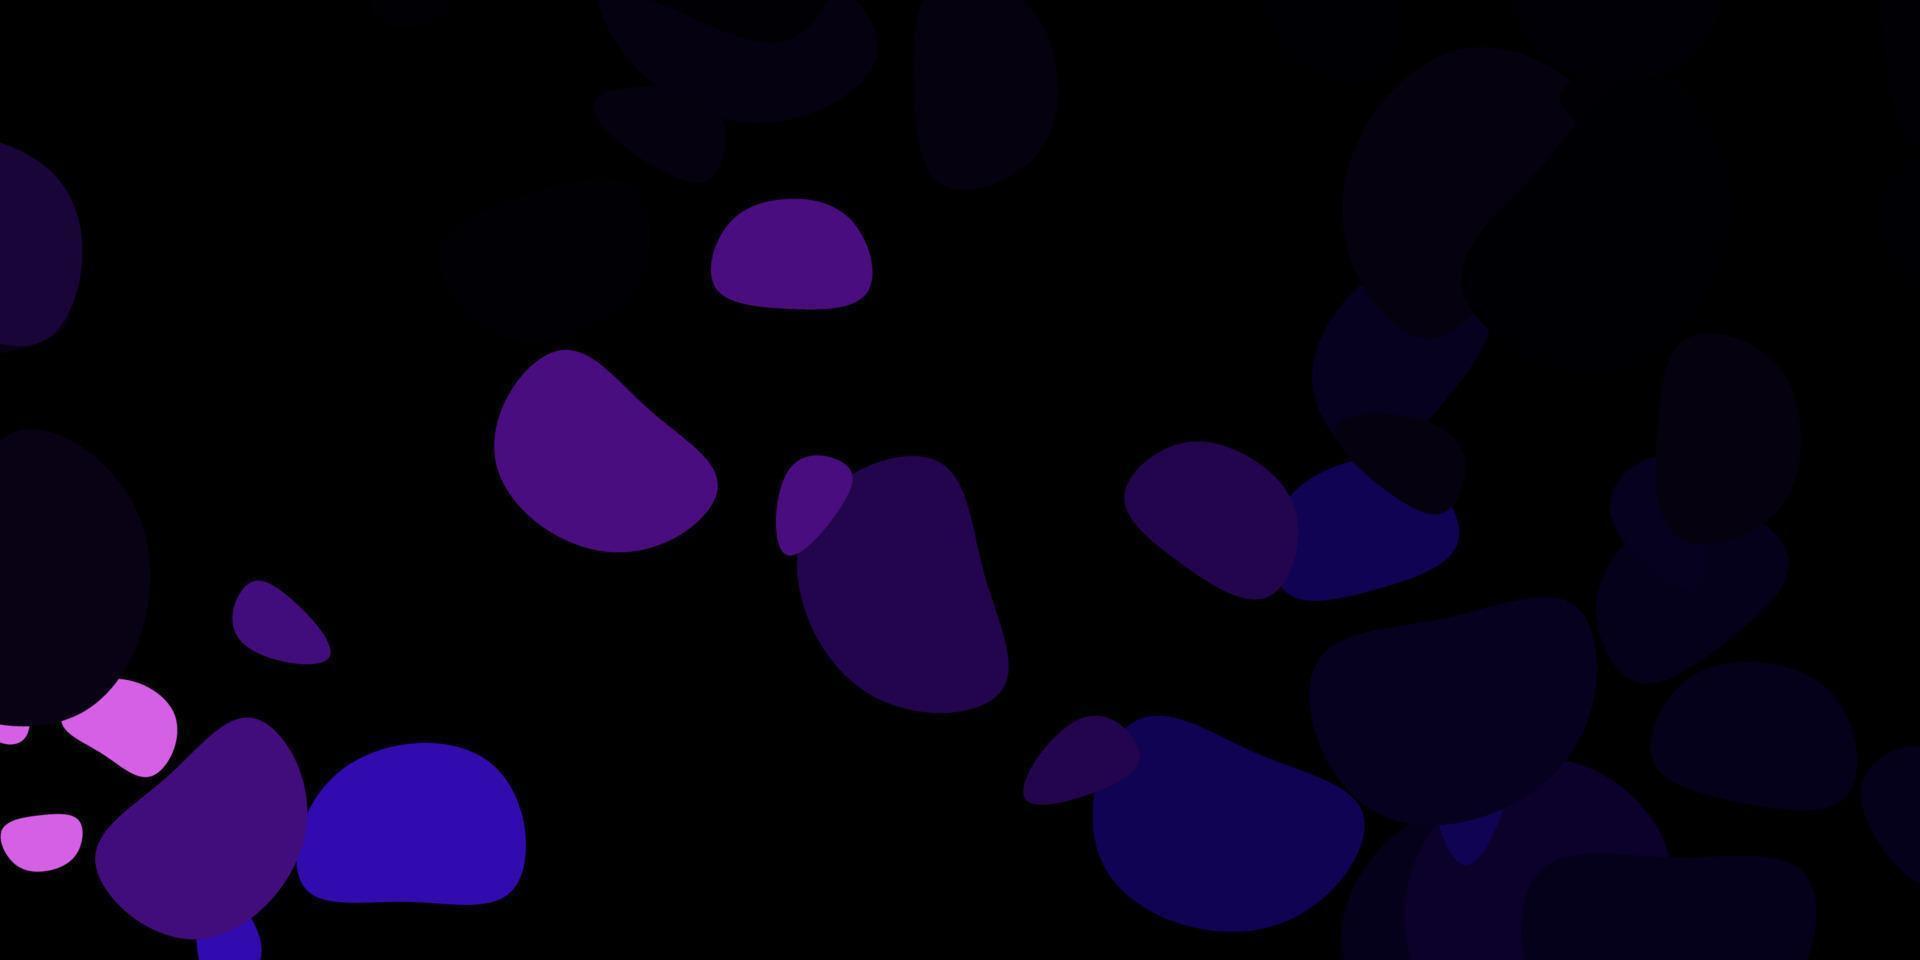 trama vettoriale viola scuro con forme di memphis.